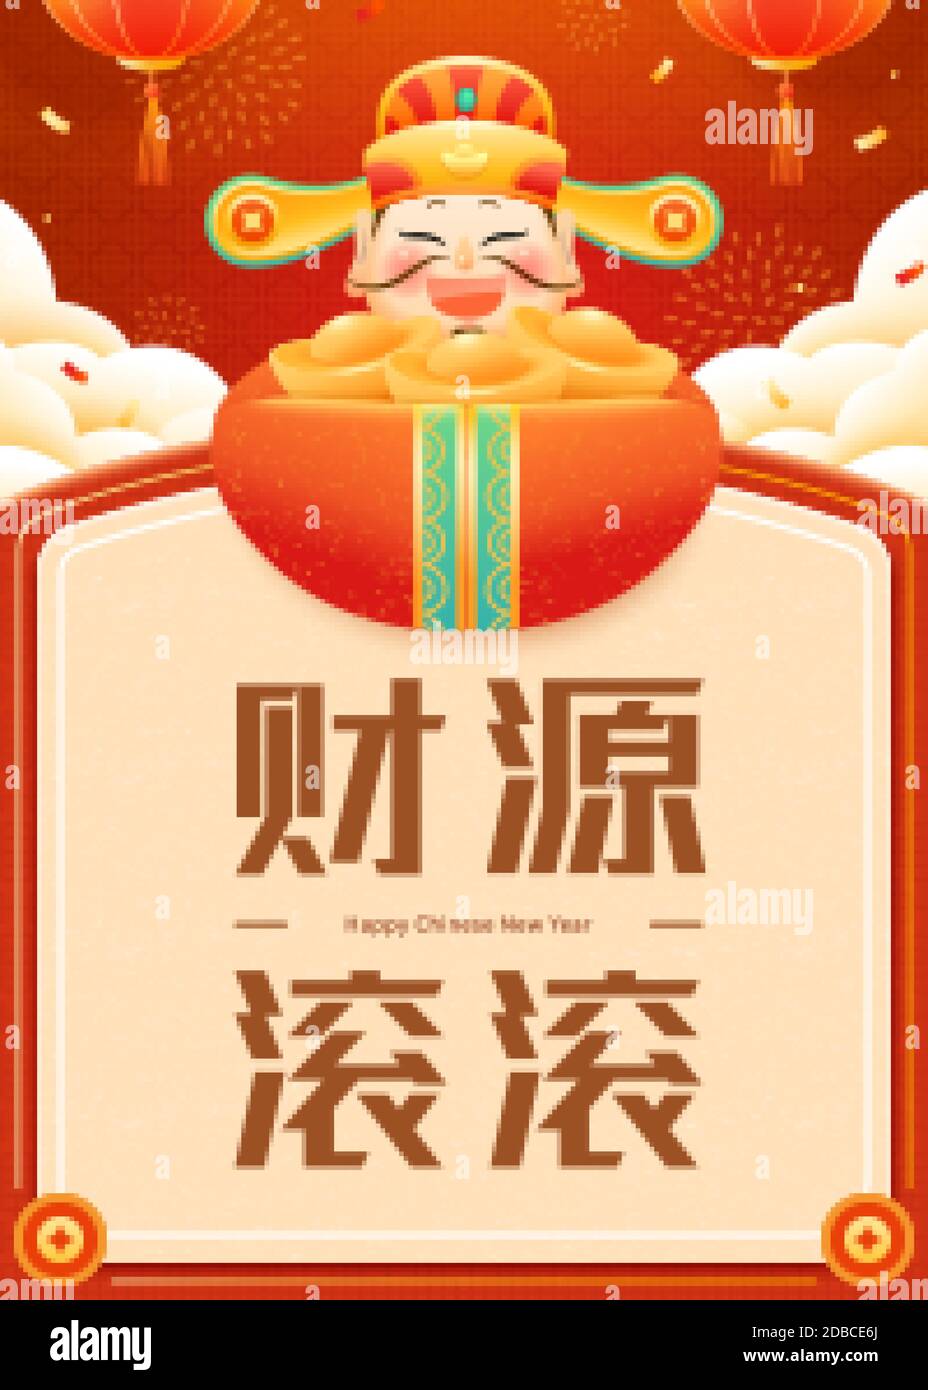 Nouvelle année bannière conçue avec caishen tenant des lingots, texte chinois: Mai richesse viennent généreusement à vous Illustration de Vecteur